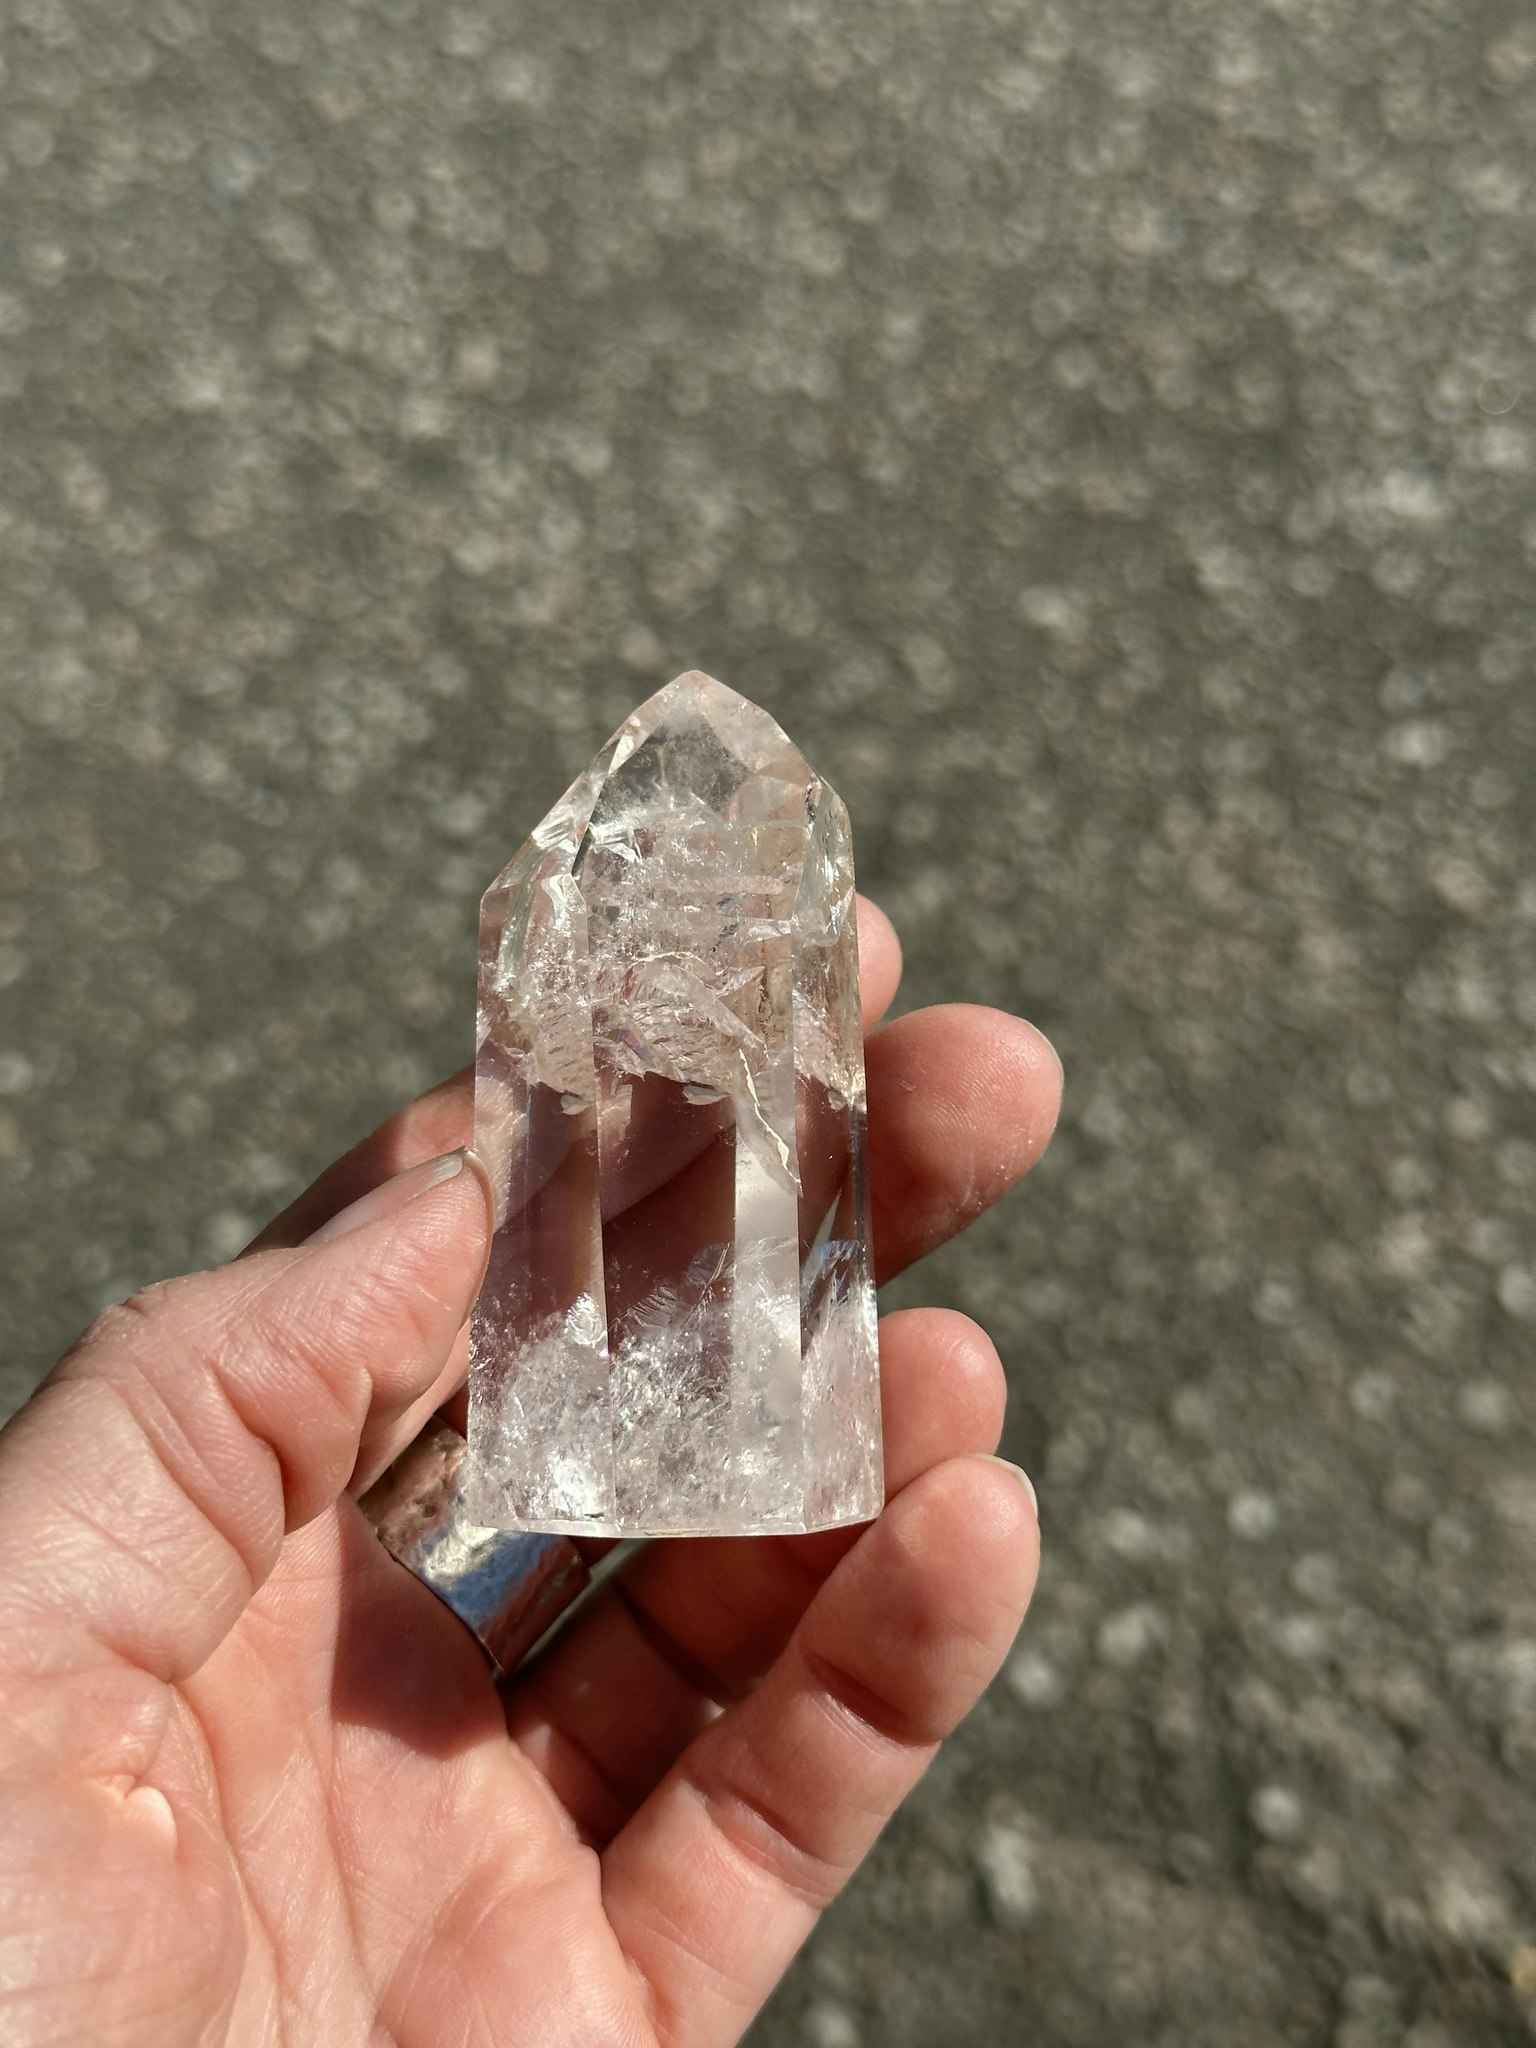 Bergkristall soets med spännande inklusioner och mönster